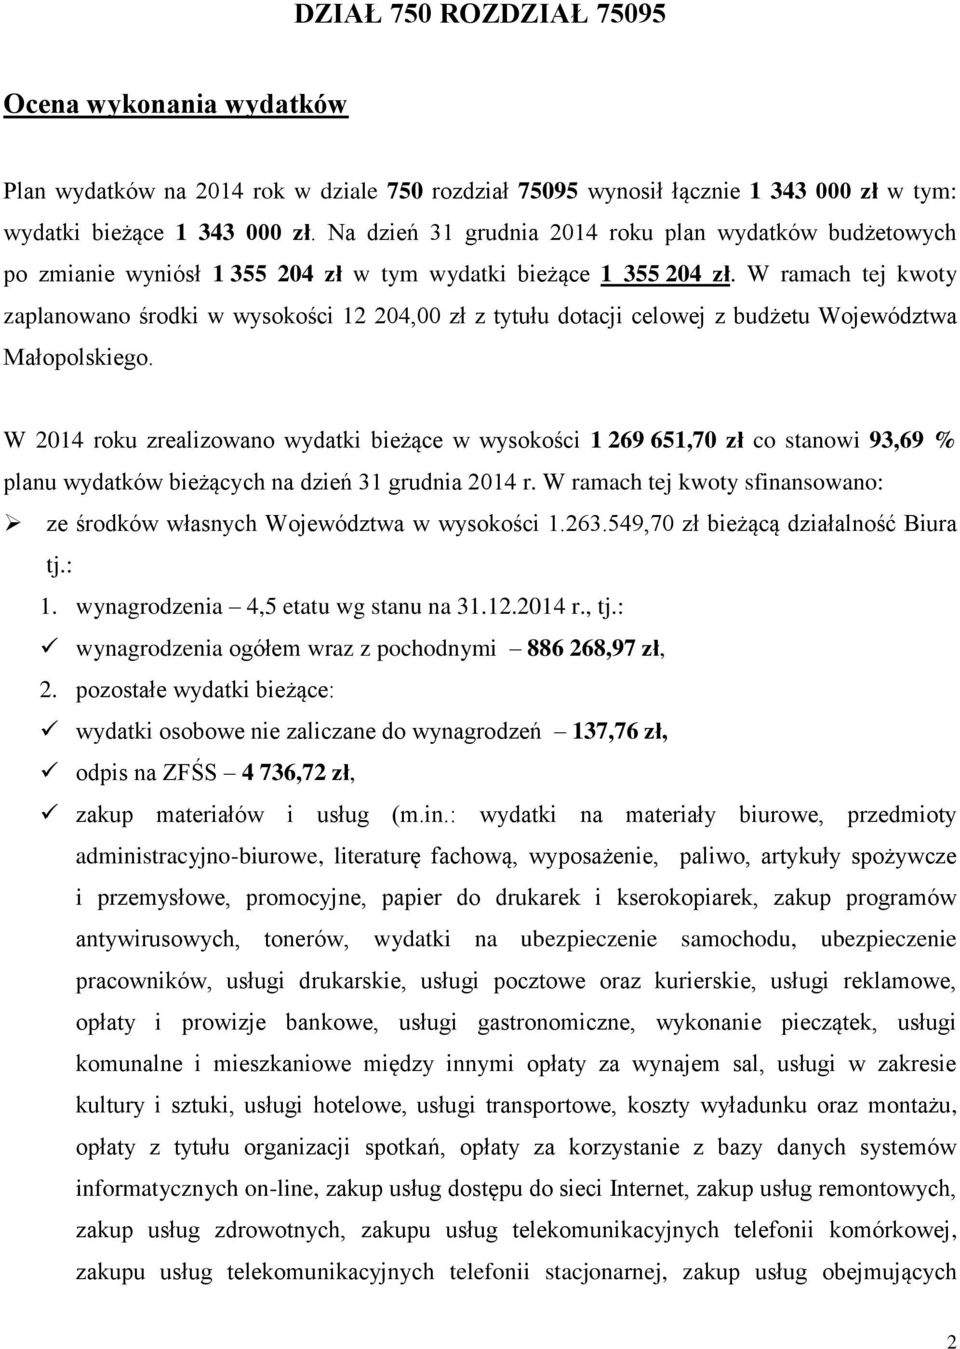 W ramach tej kwoty zaplanowano środki w wysokości 12 204,00 zł z tytułu dotacji celowej z budżetu Województwa Małopolskiego.